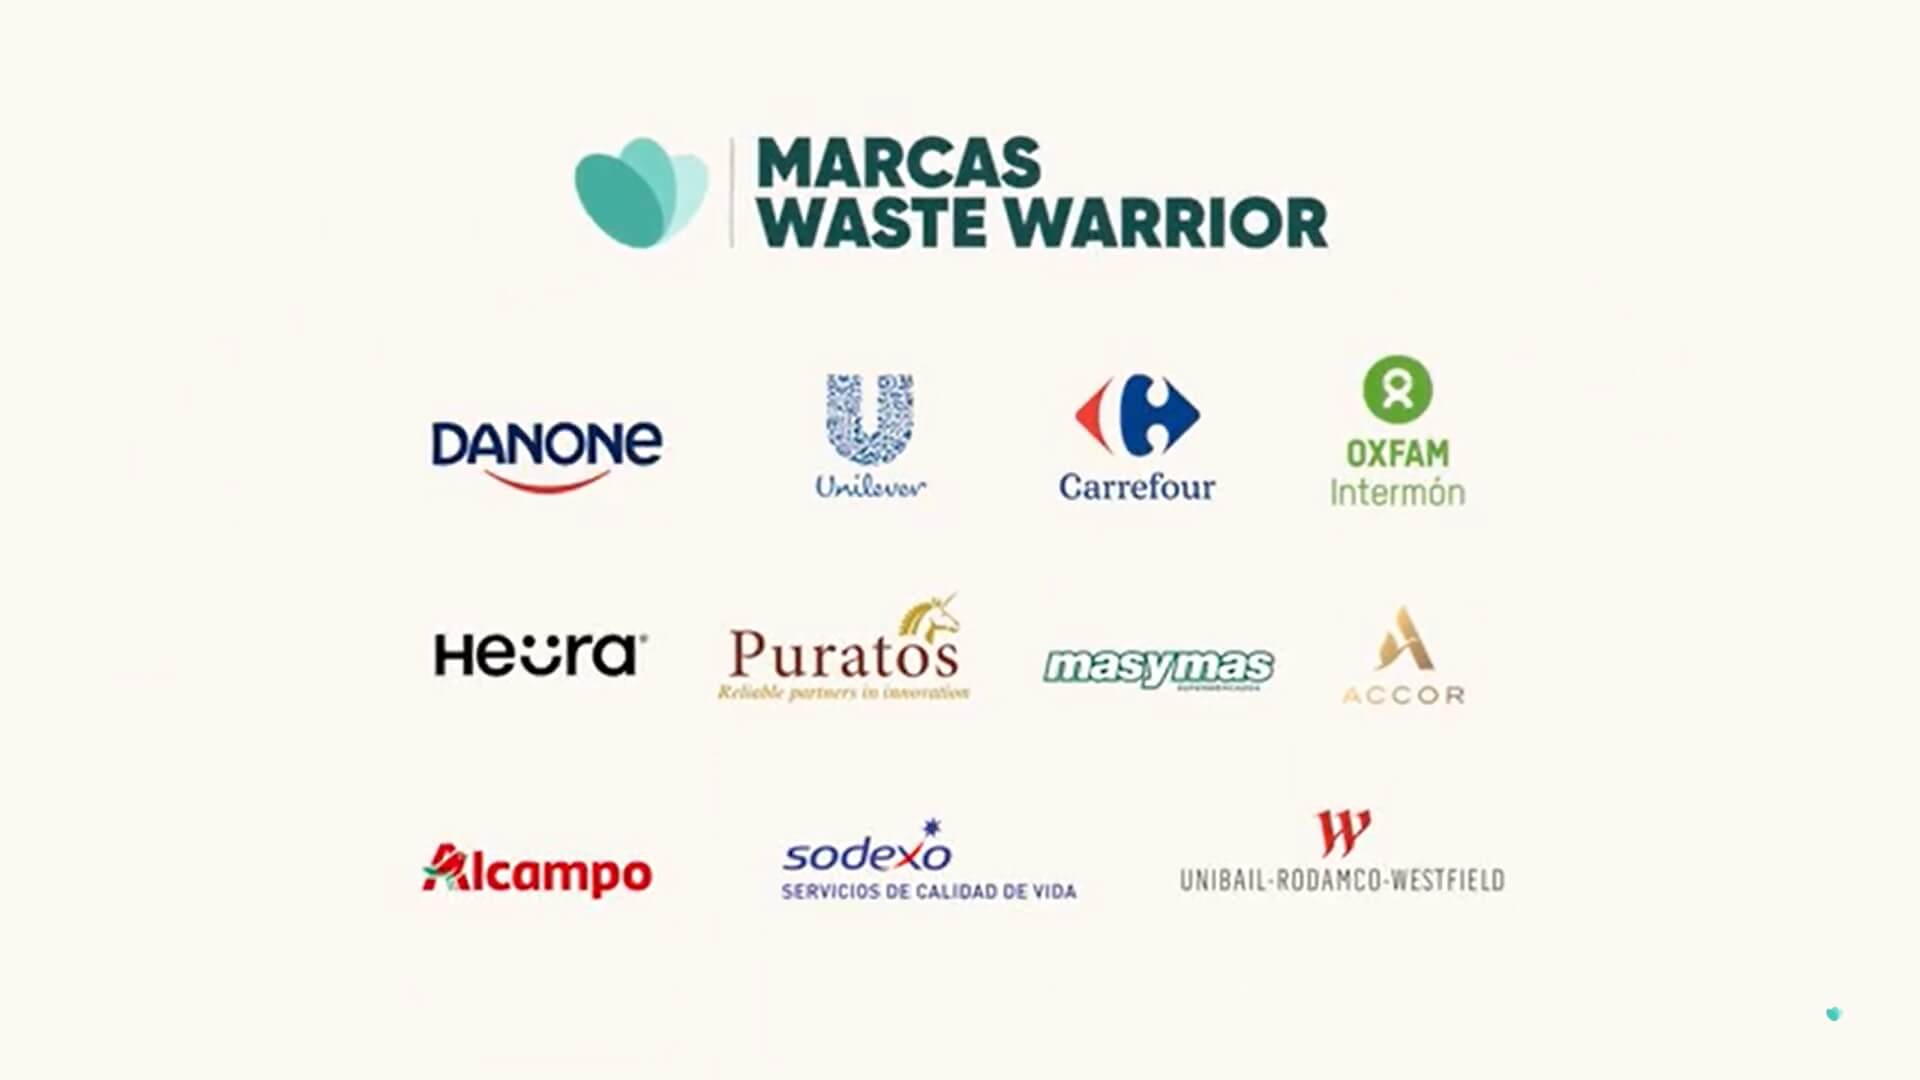 Las onces marcas que forman parte de Waste Warrior